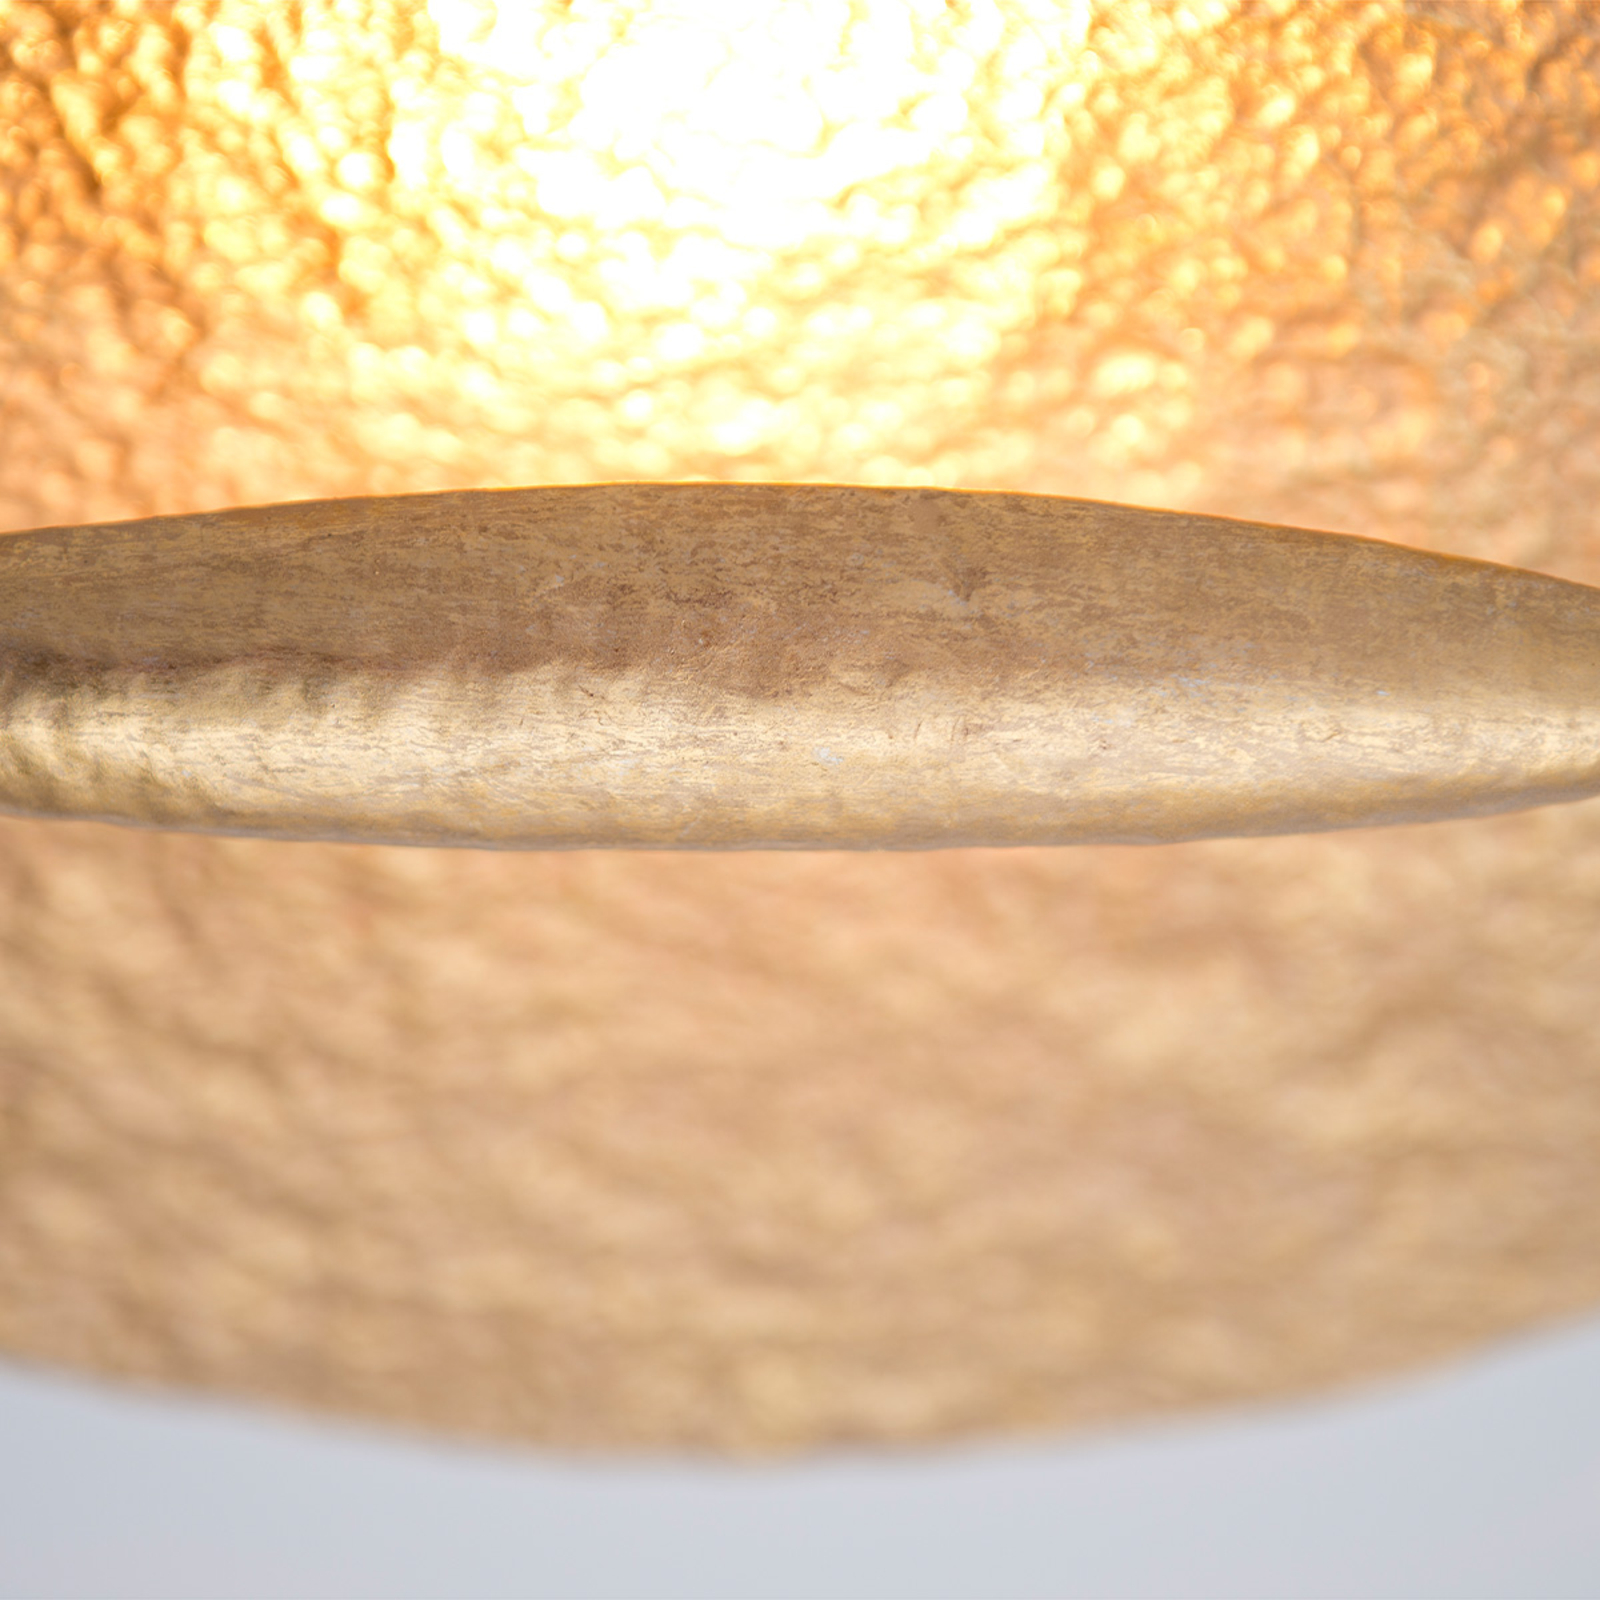 Goldfarbene LED-Deckenlampe Trabant